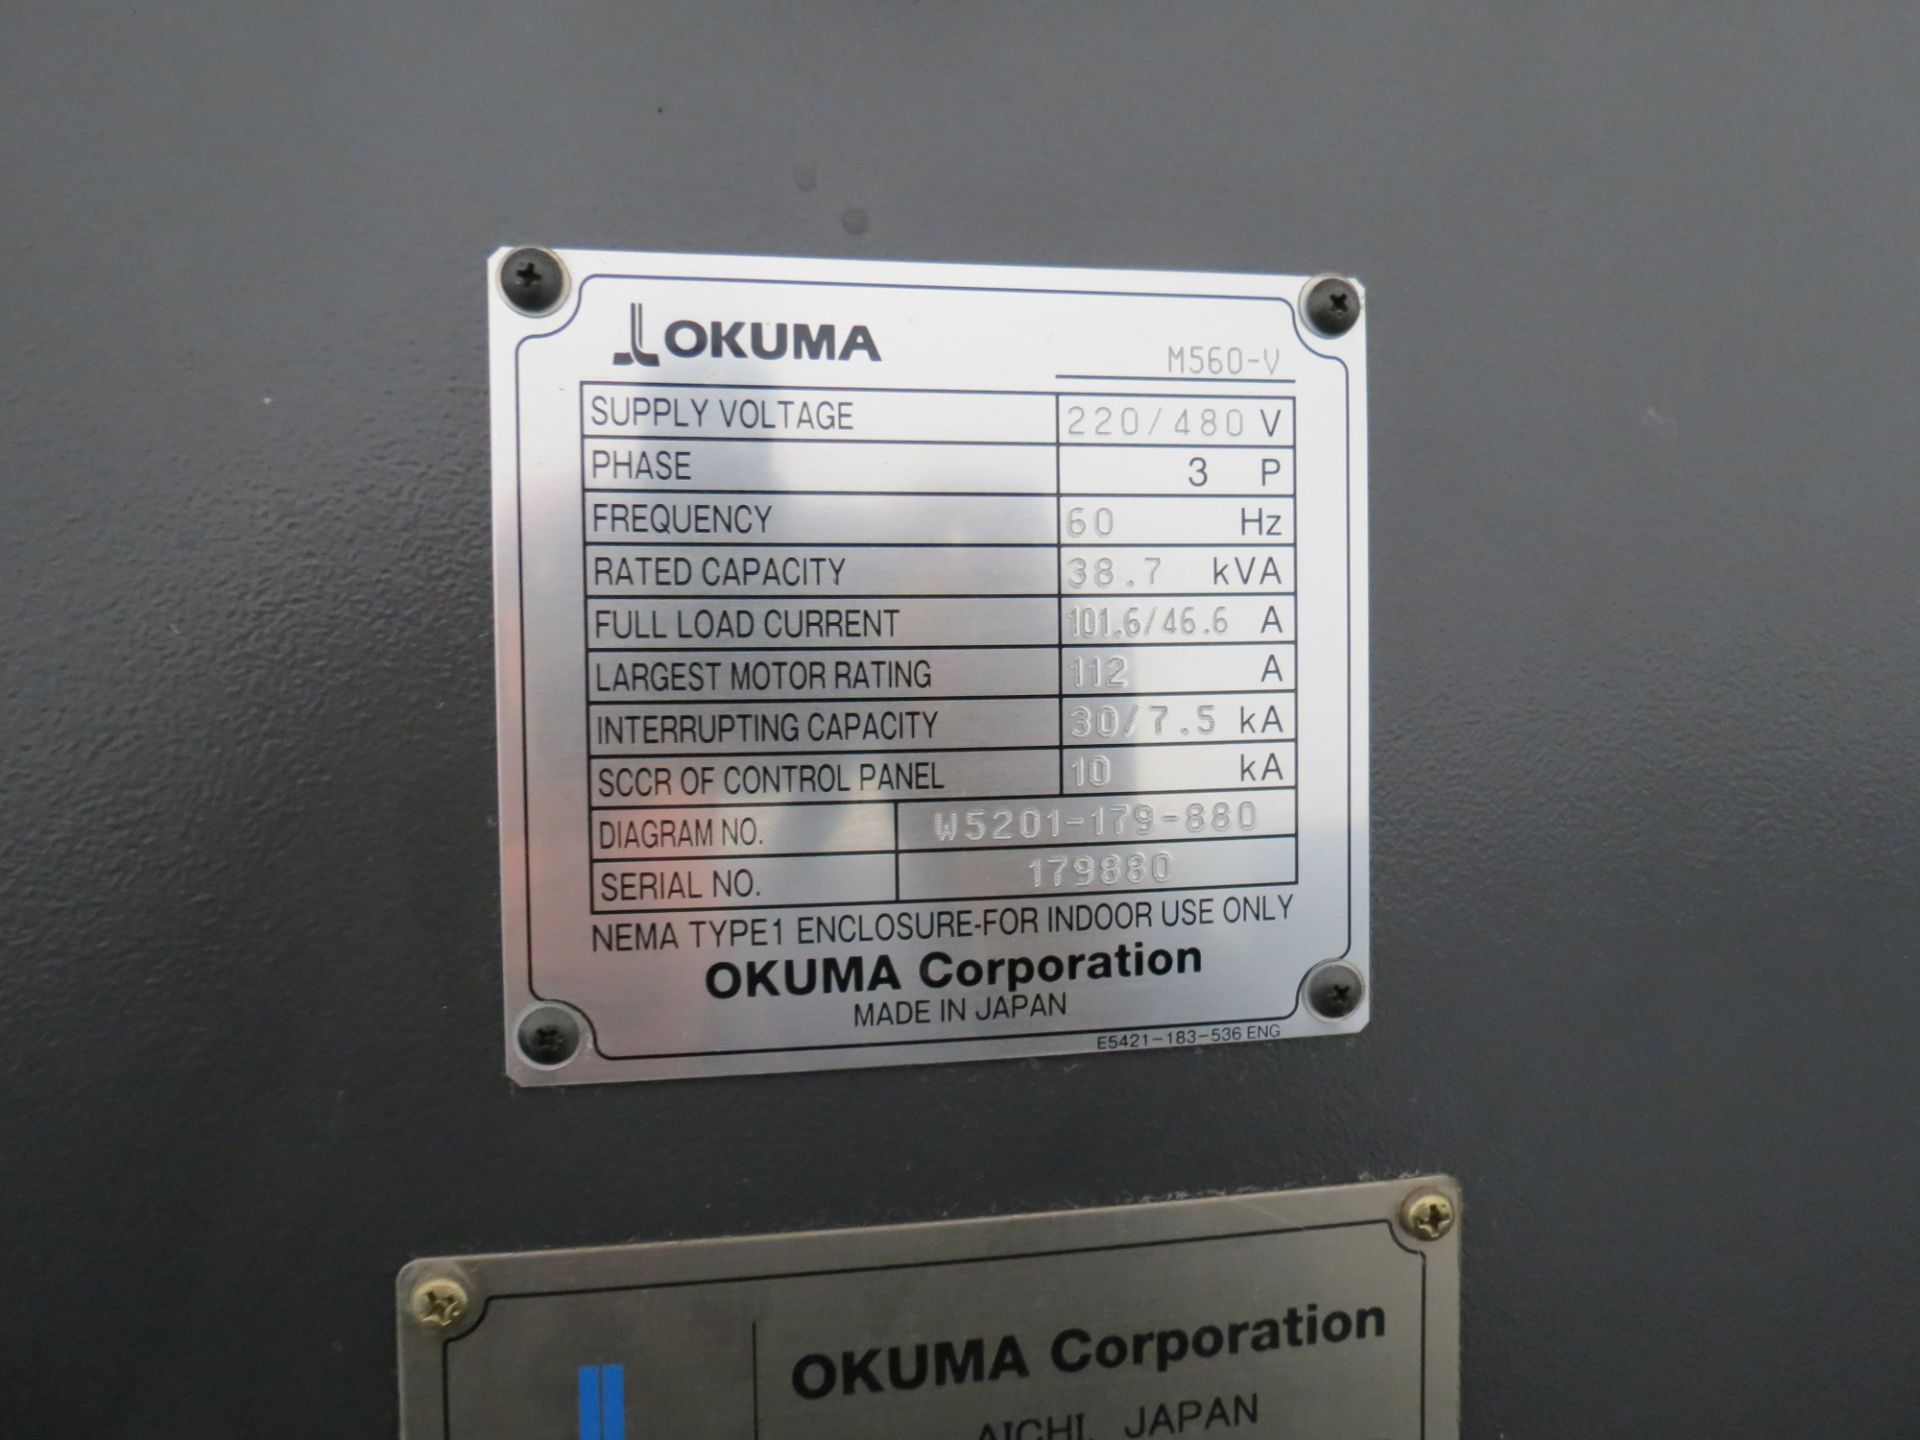 2014 OKUMA GENOS M560-V CNC VERTICAL MACHINING CENTER WITH OKUMA QSP-P300M CONTROL, SN: 179880, - Image 11 of 11